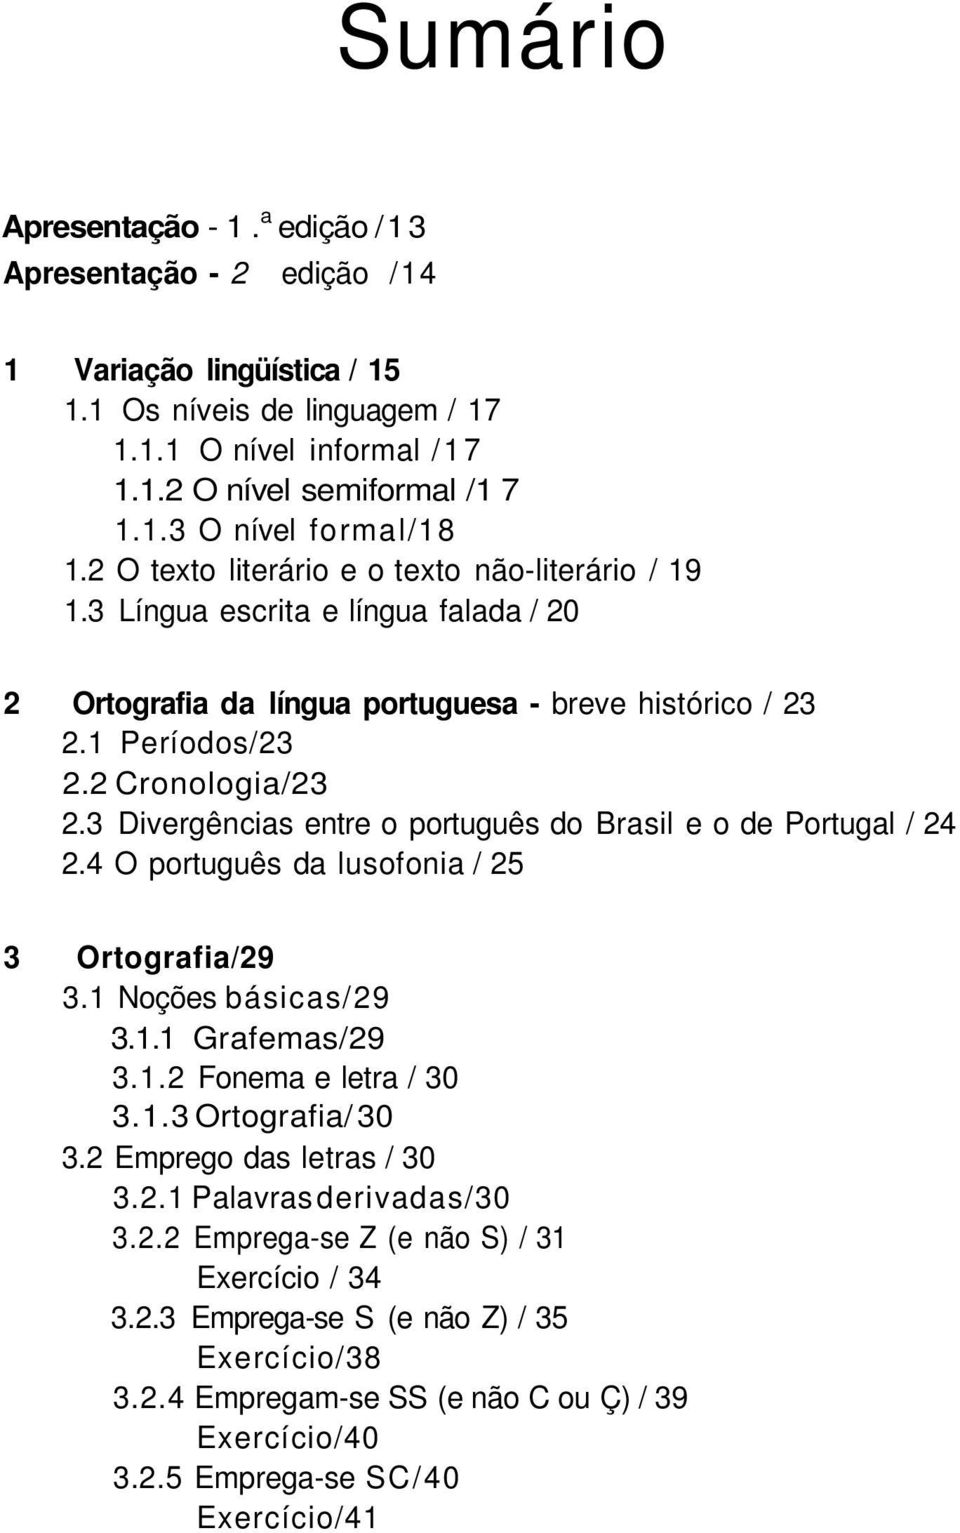 3 Divergências entre o português do Brasil e o de Portugal / 24 2.4 O português da lusofonia / 25 3 Ortografia/29 3.1 Noções básicas/29 3.1.1 Grafemas/29 3.1.2 Fonema e letra / 30 3.1.3 Ortografia/ 30 3.